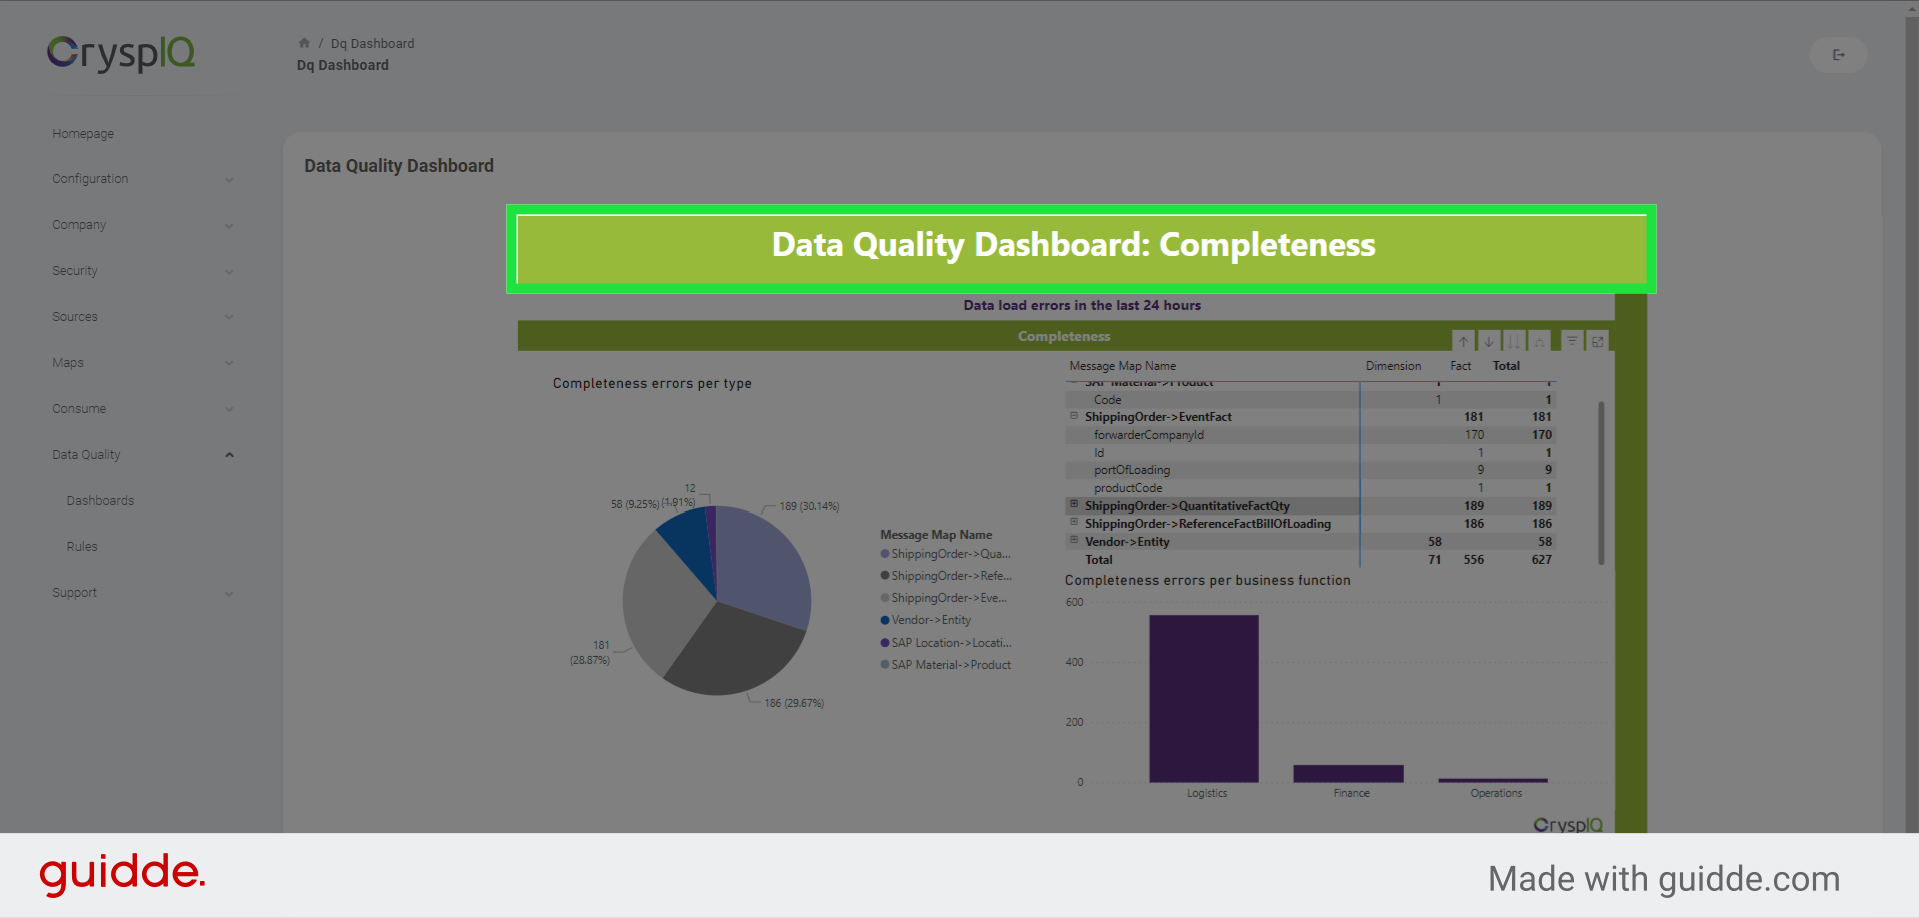 Drilldown reports per Data Quality Dimension